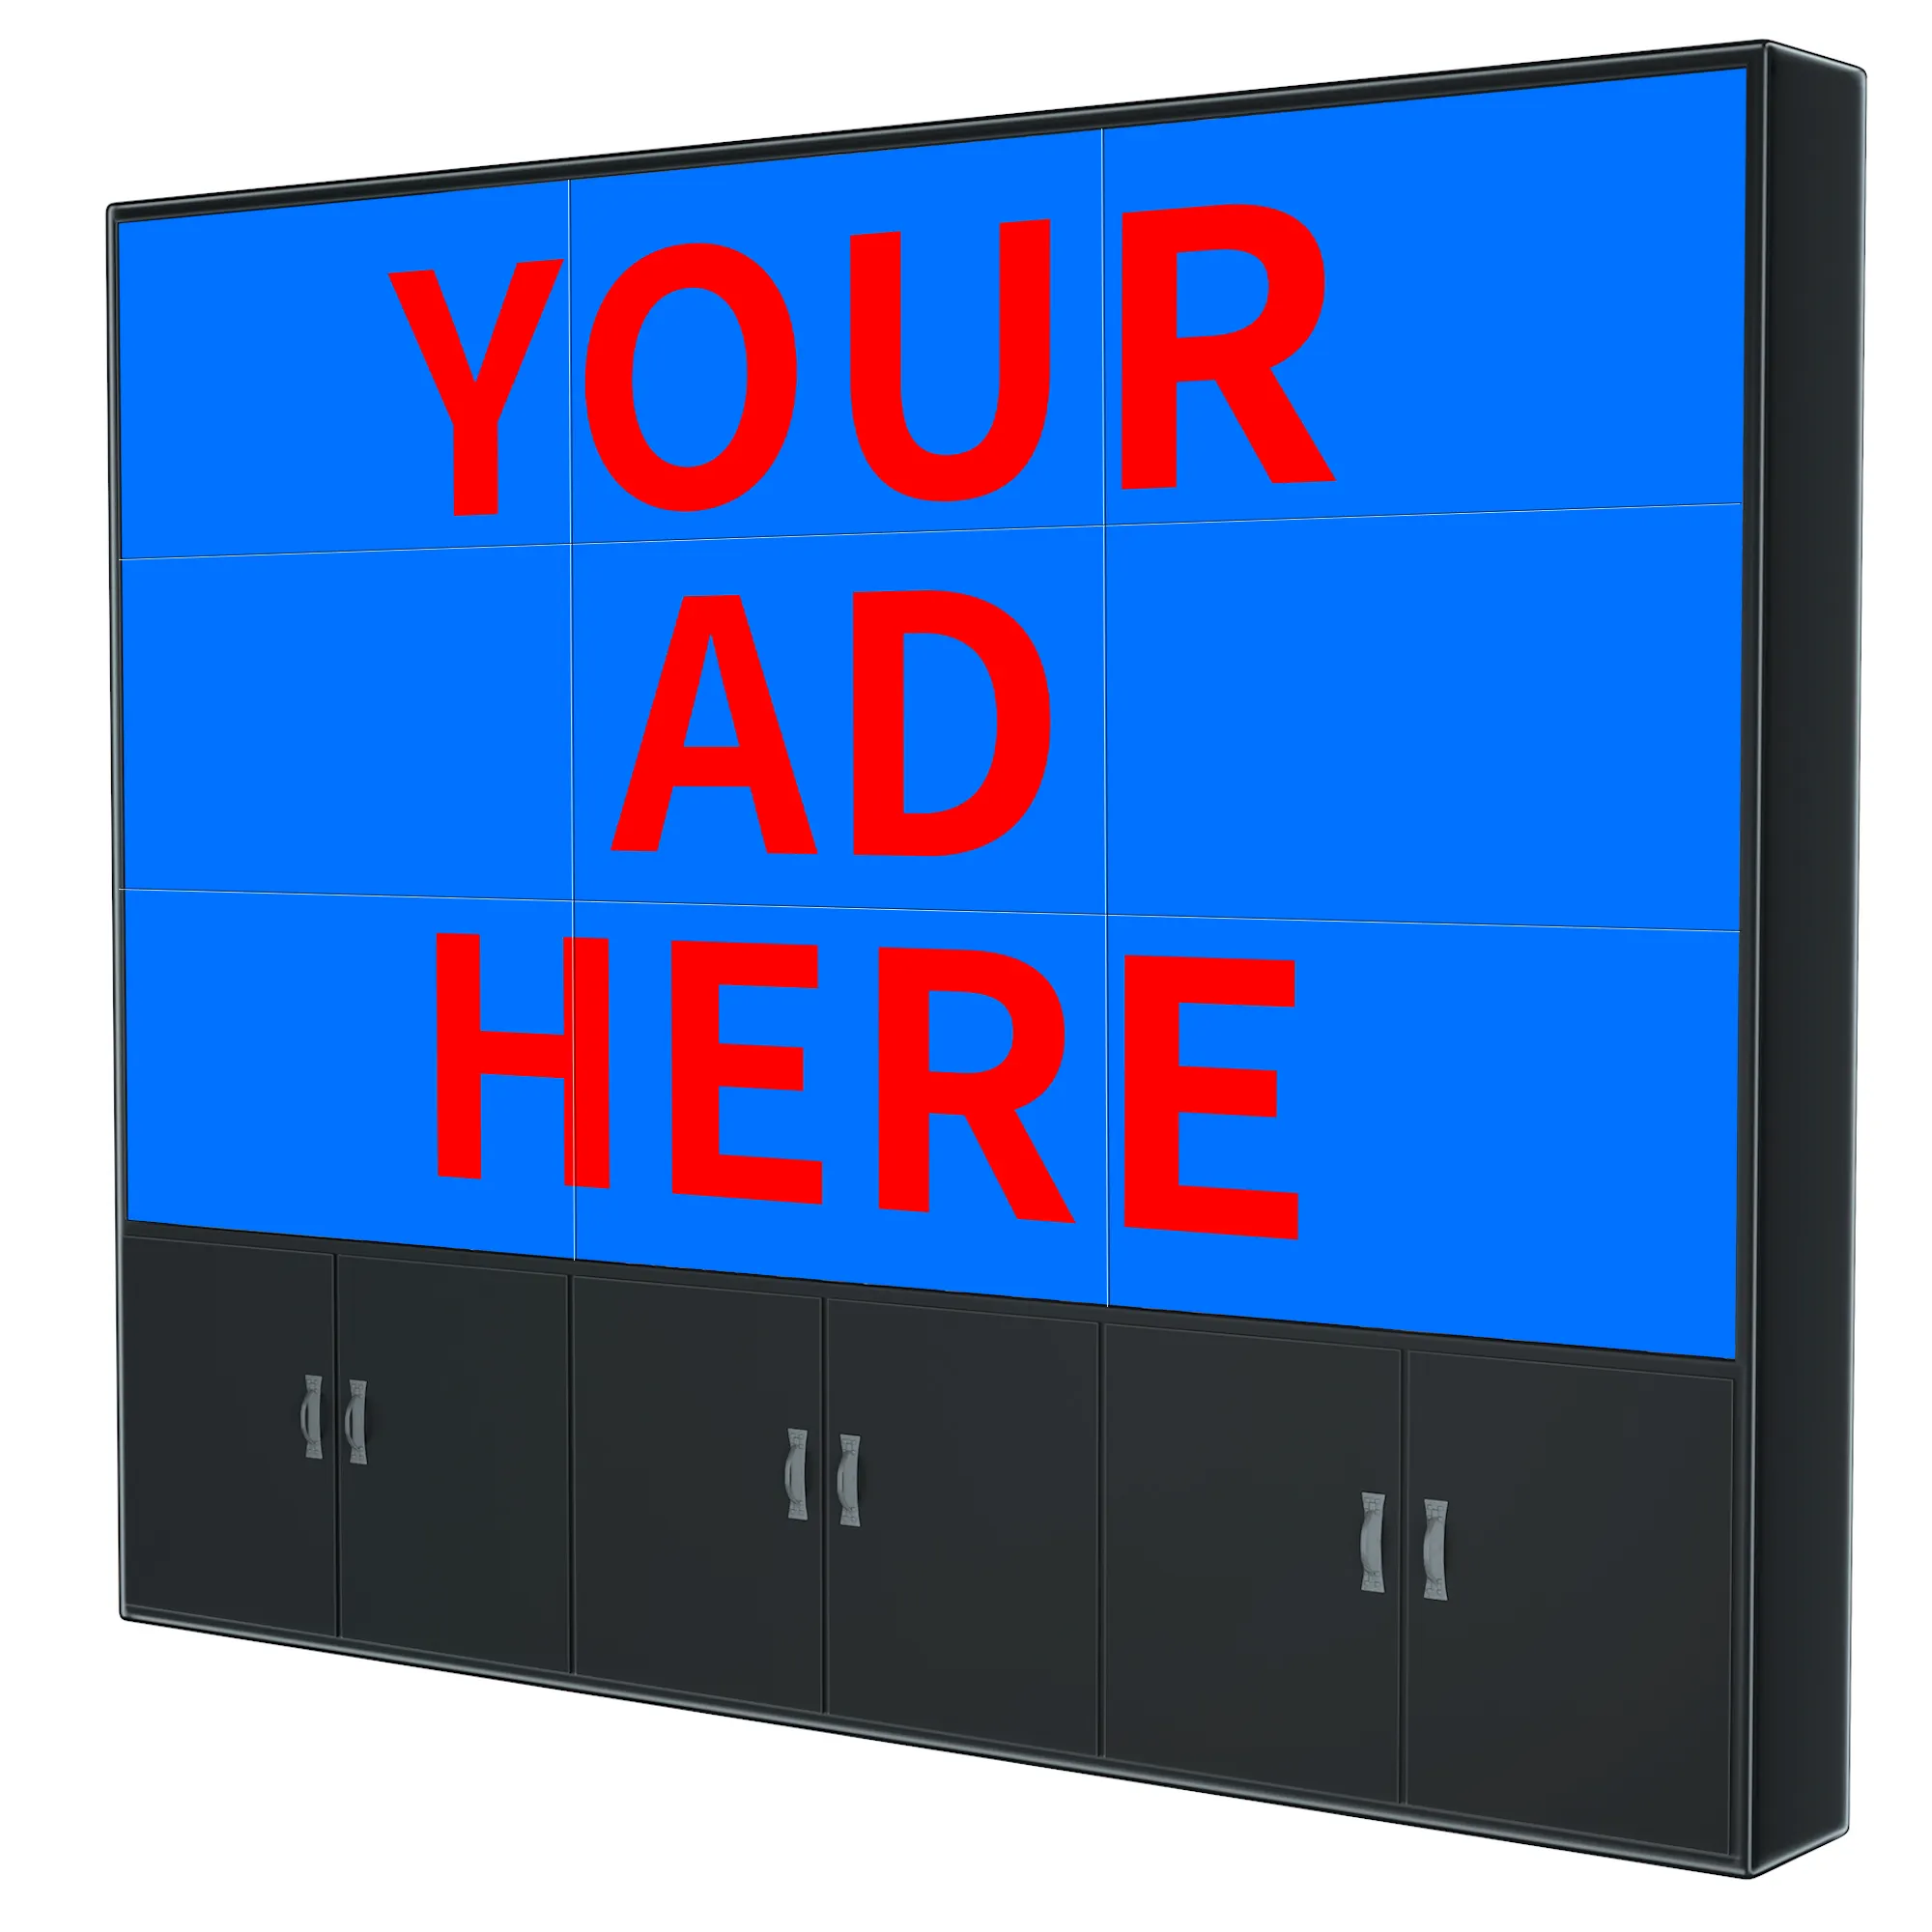 4k 스크린 3x3 마운트 브래킷 videowall 컨트롤러 광고 디스플레이 접합 저렴한 LED LCD 패널 삼성 비디오 벽 가격